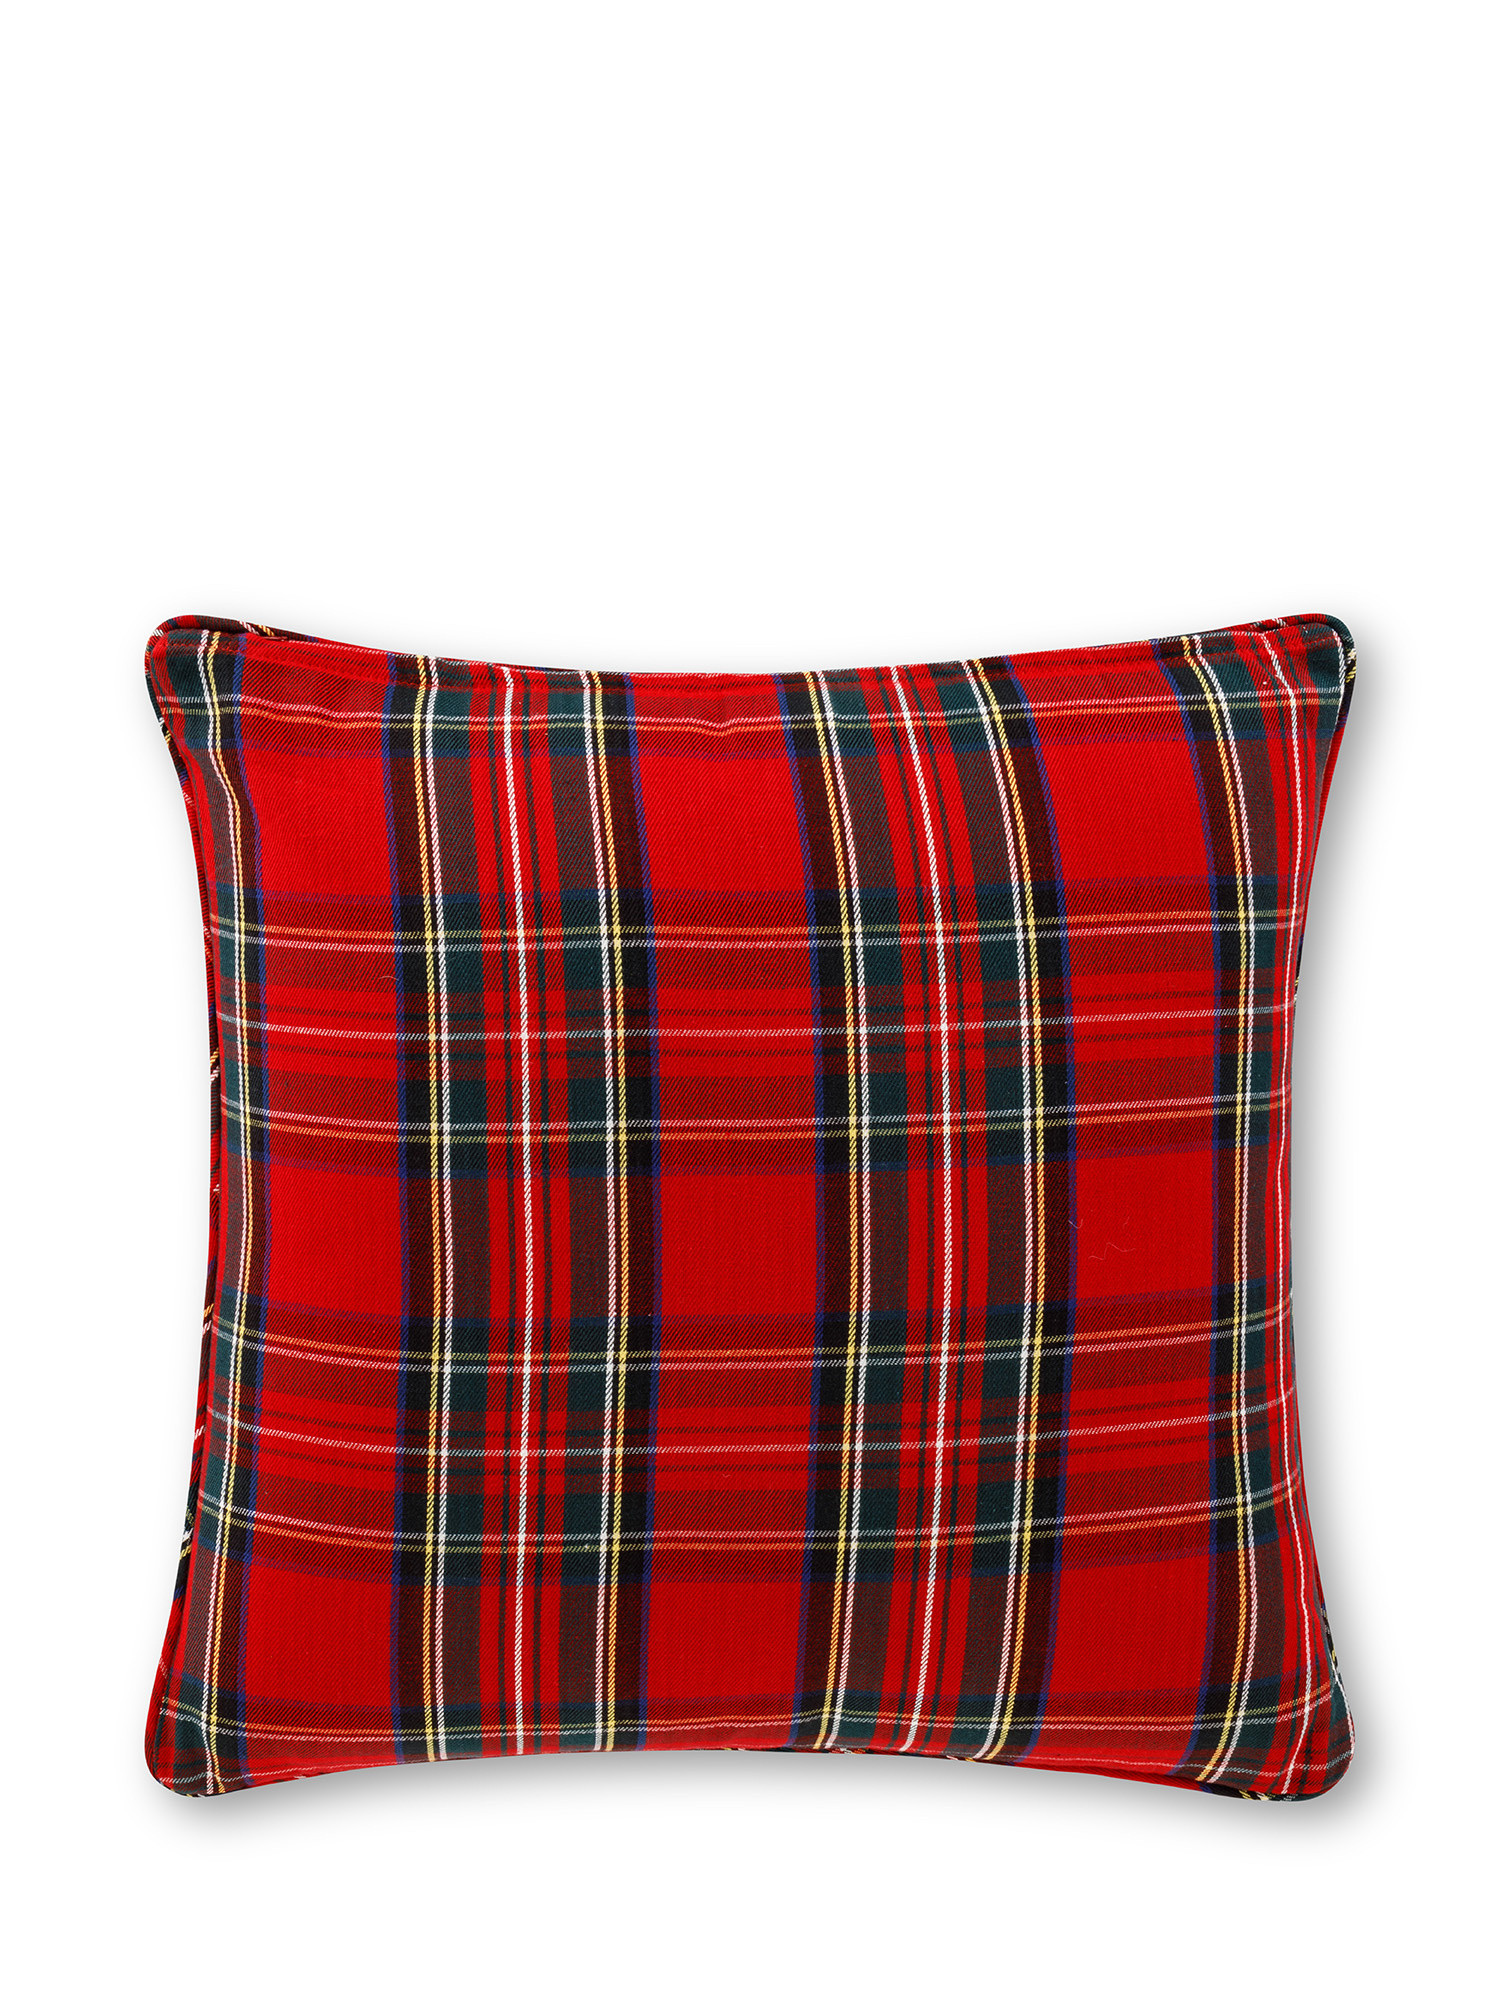 Tartan cushion 45x45 cm, Red, large image number 1